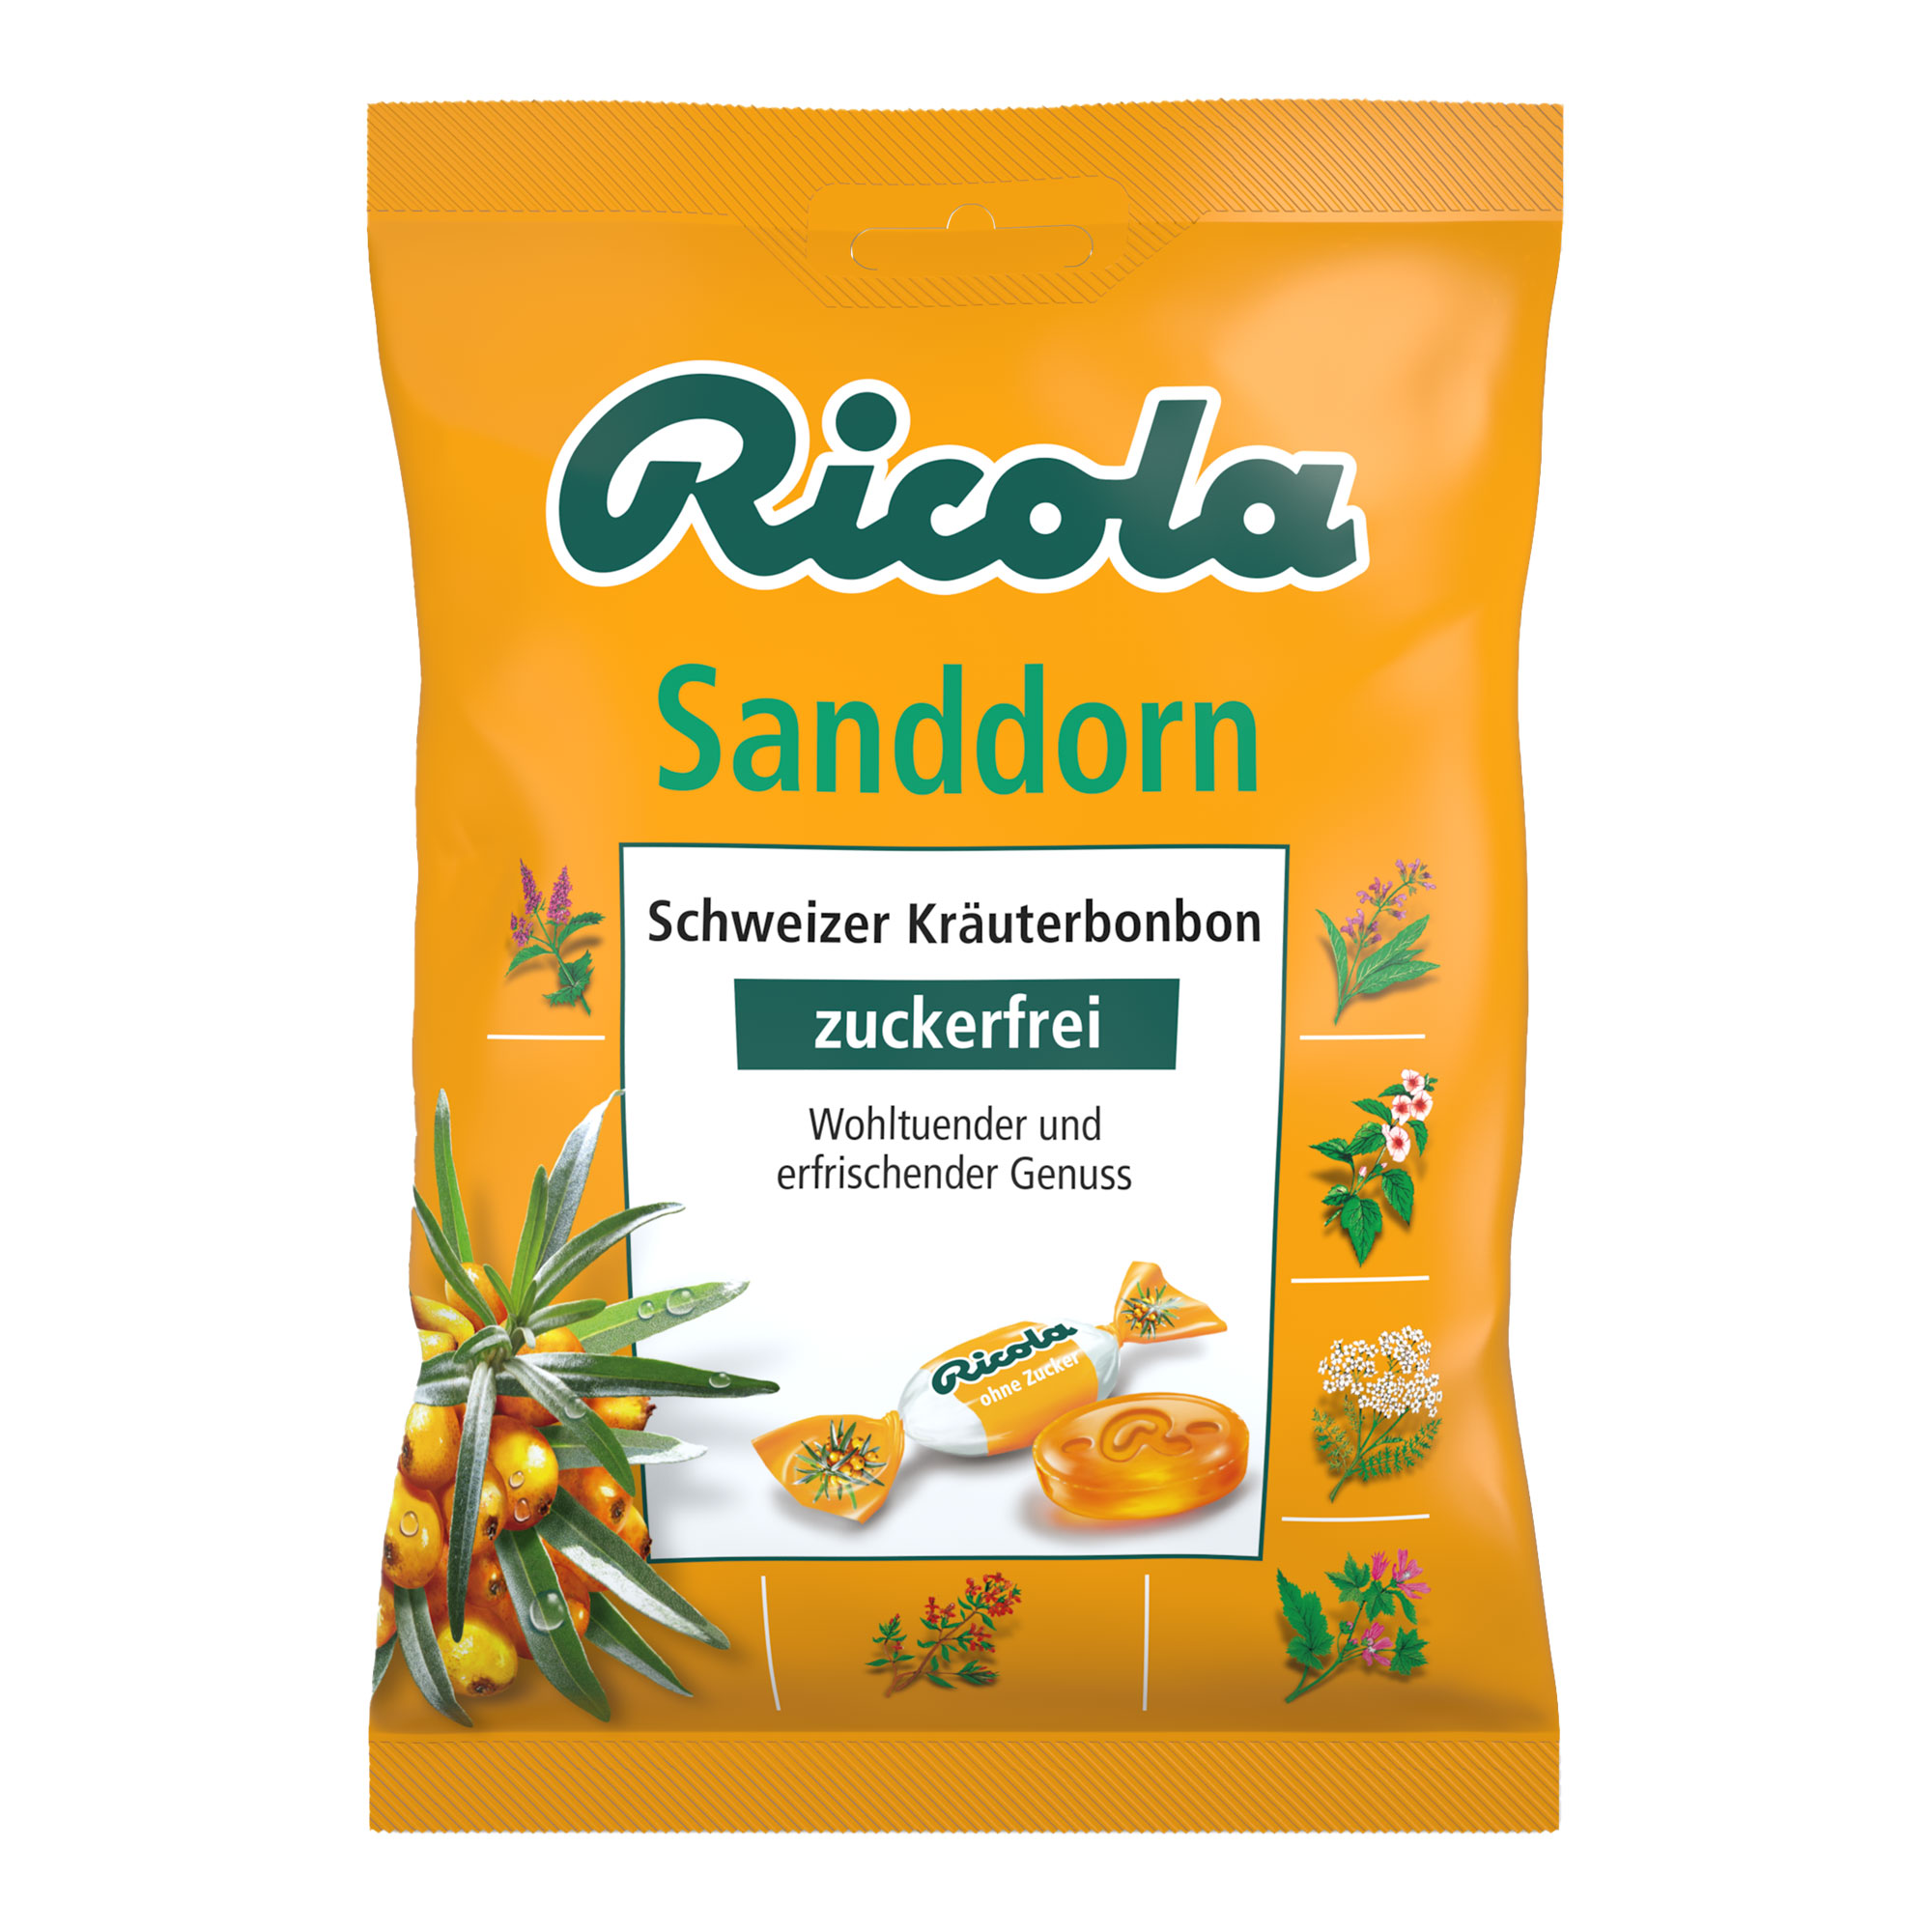 Schweizer Kräuterbonbons mit süßem Sanddorn-Geschmack. Zuckerfrei.